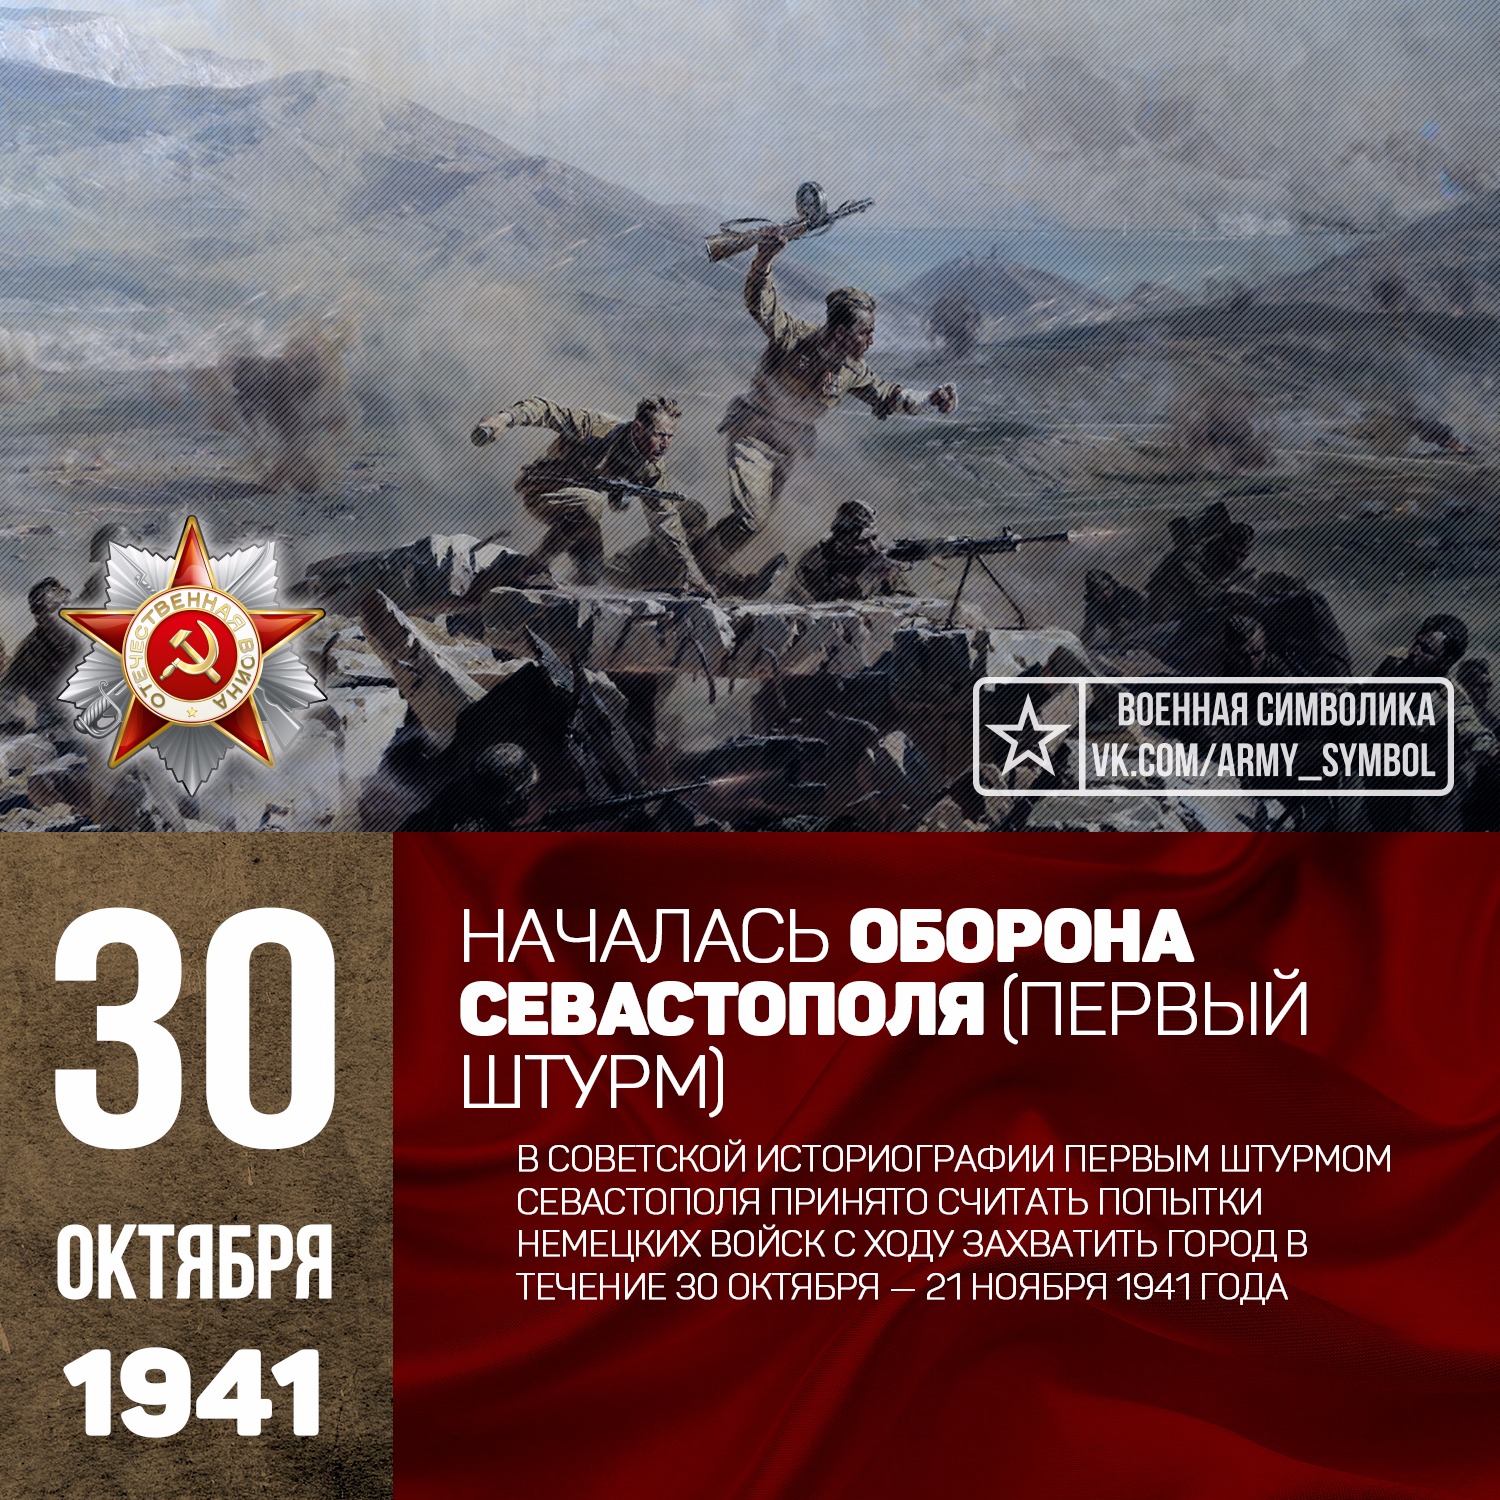 Октябрь 1941 начало обороны. 30 Октября 1941 г. - началась Героическая оборона Севастополя (1941-1942). Первый штурм Севастополя (30 октября — 21 ноября 1941 года);. 30 Октября оборона Севастополя.